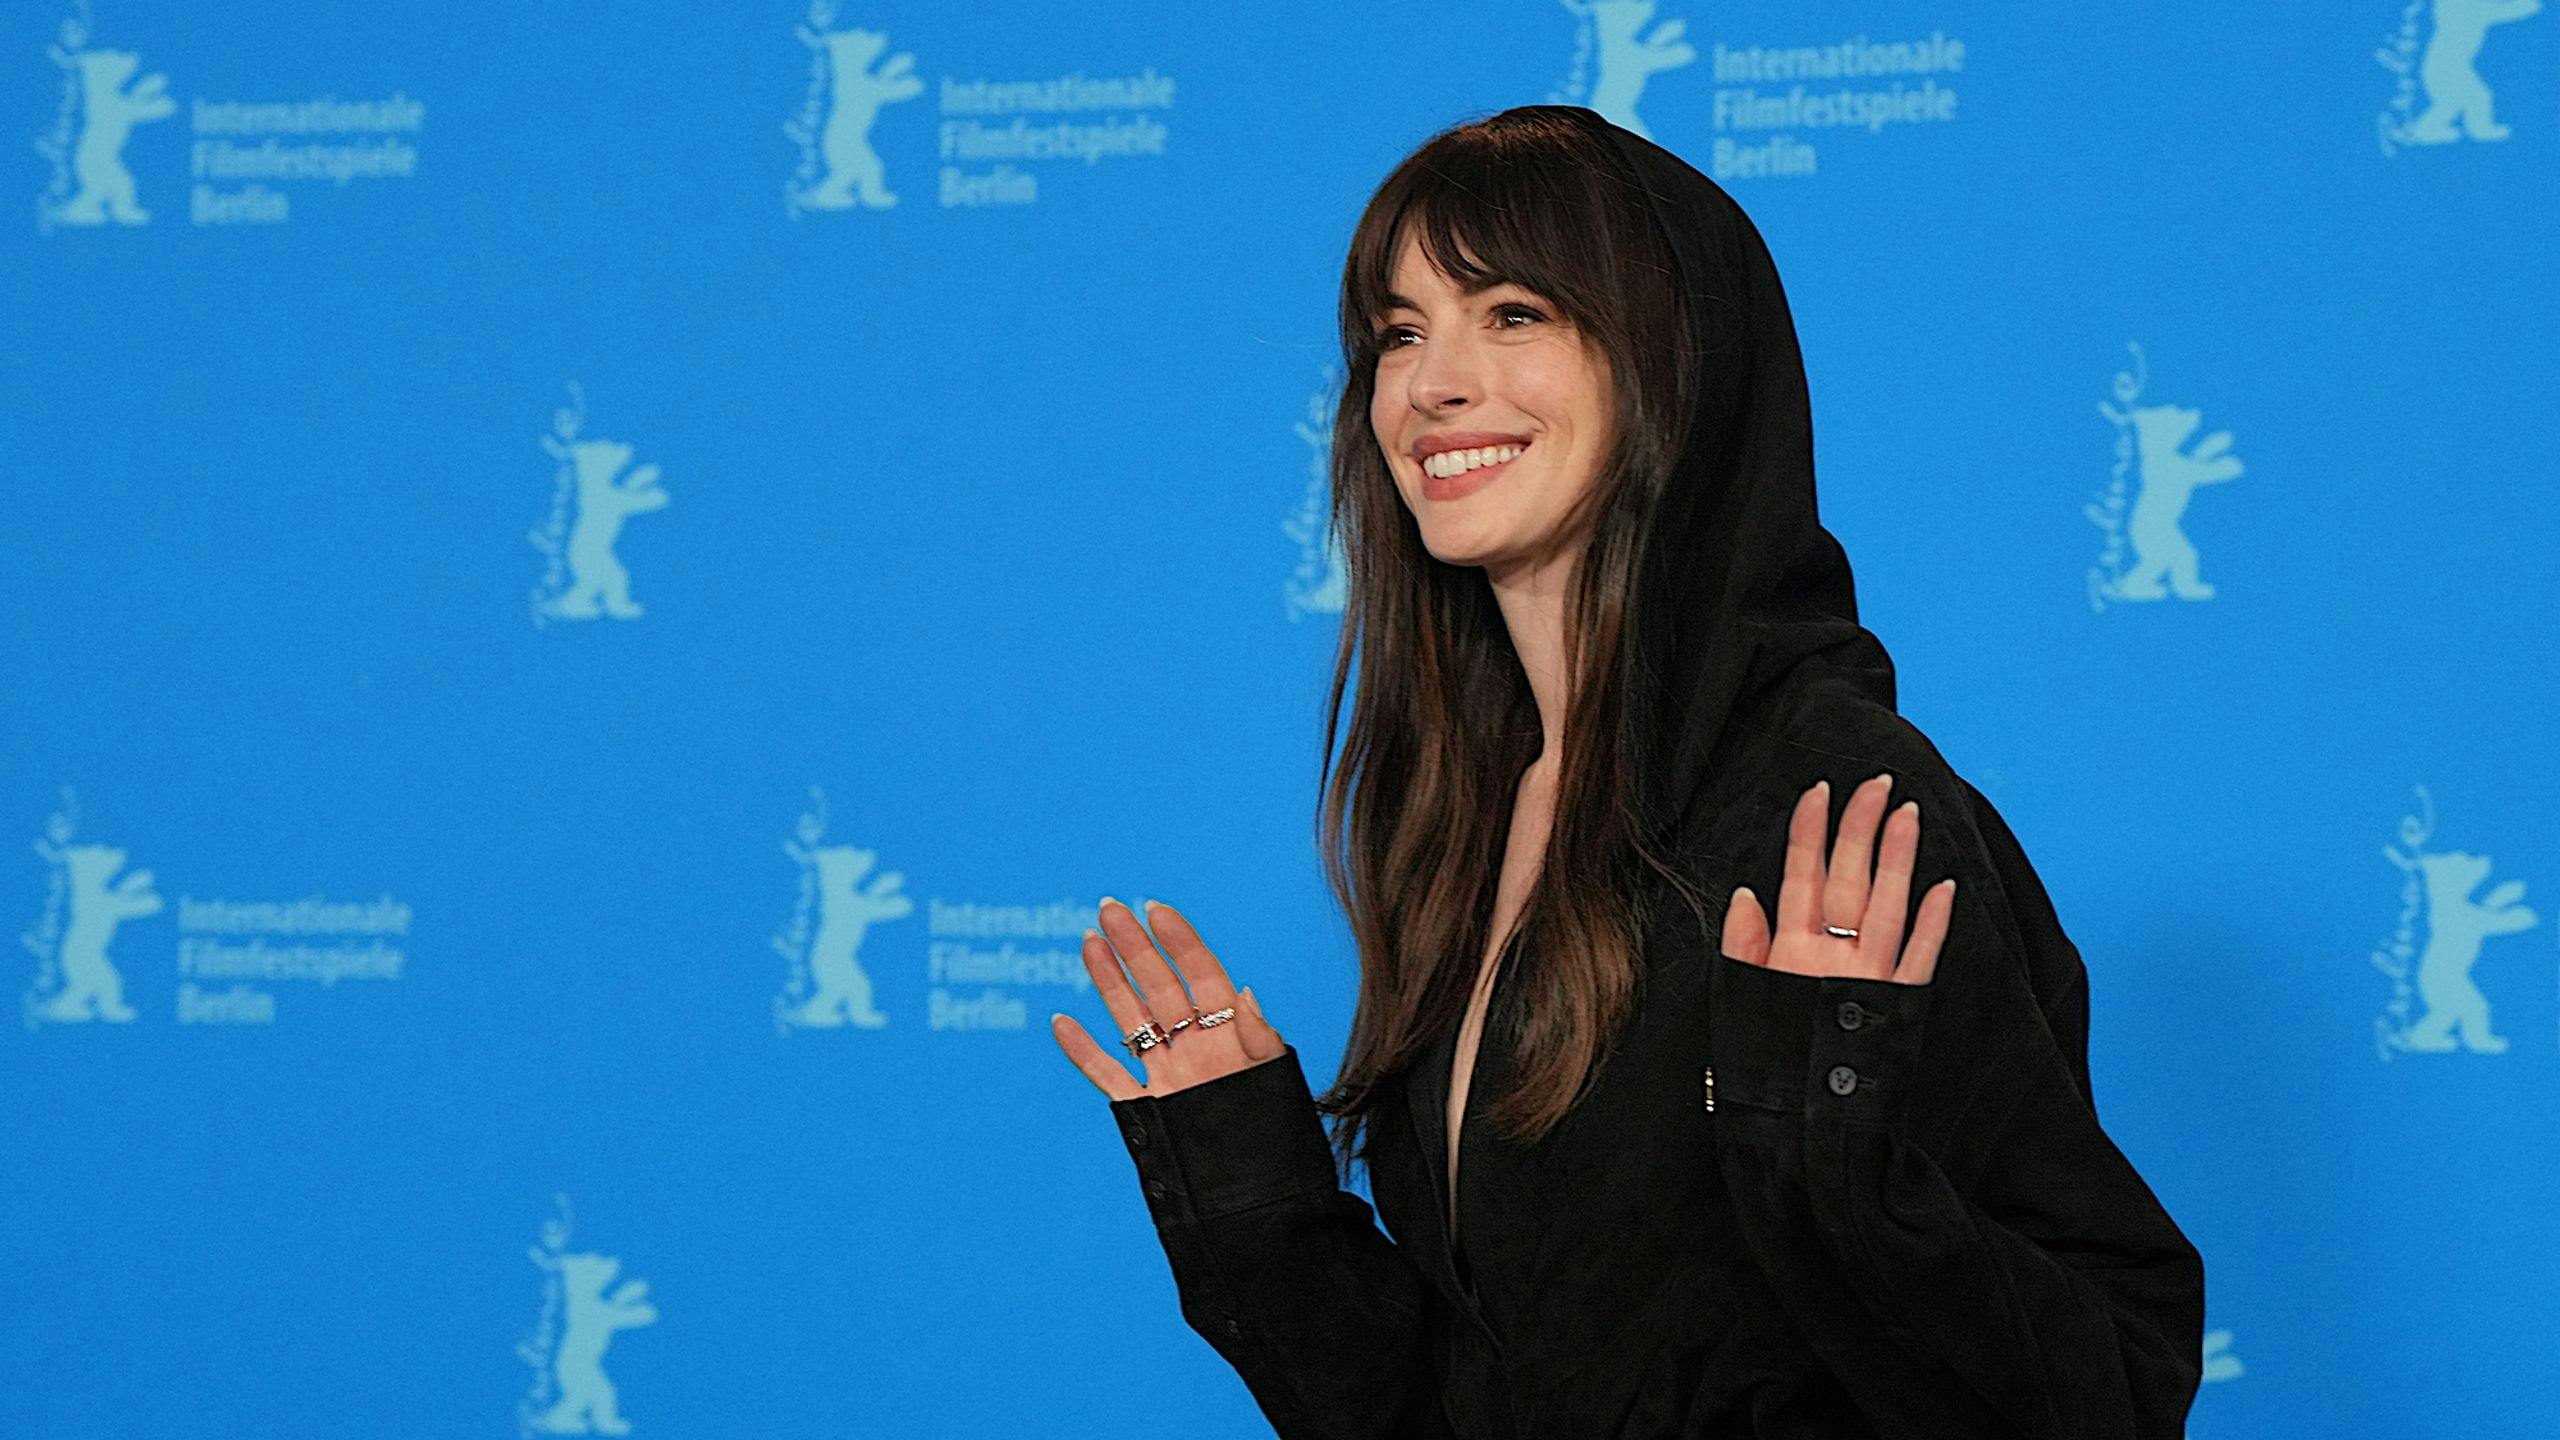 La actriz Anne Hathaway saluda a los fotógrafos durante el photocall de la película 'She came to me' en la Berlinale